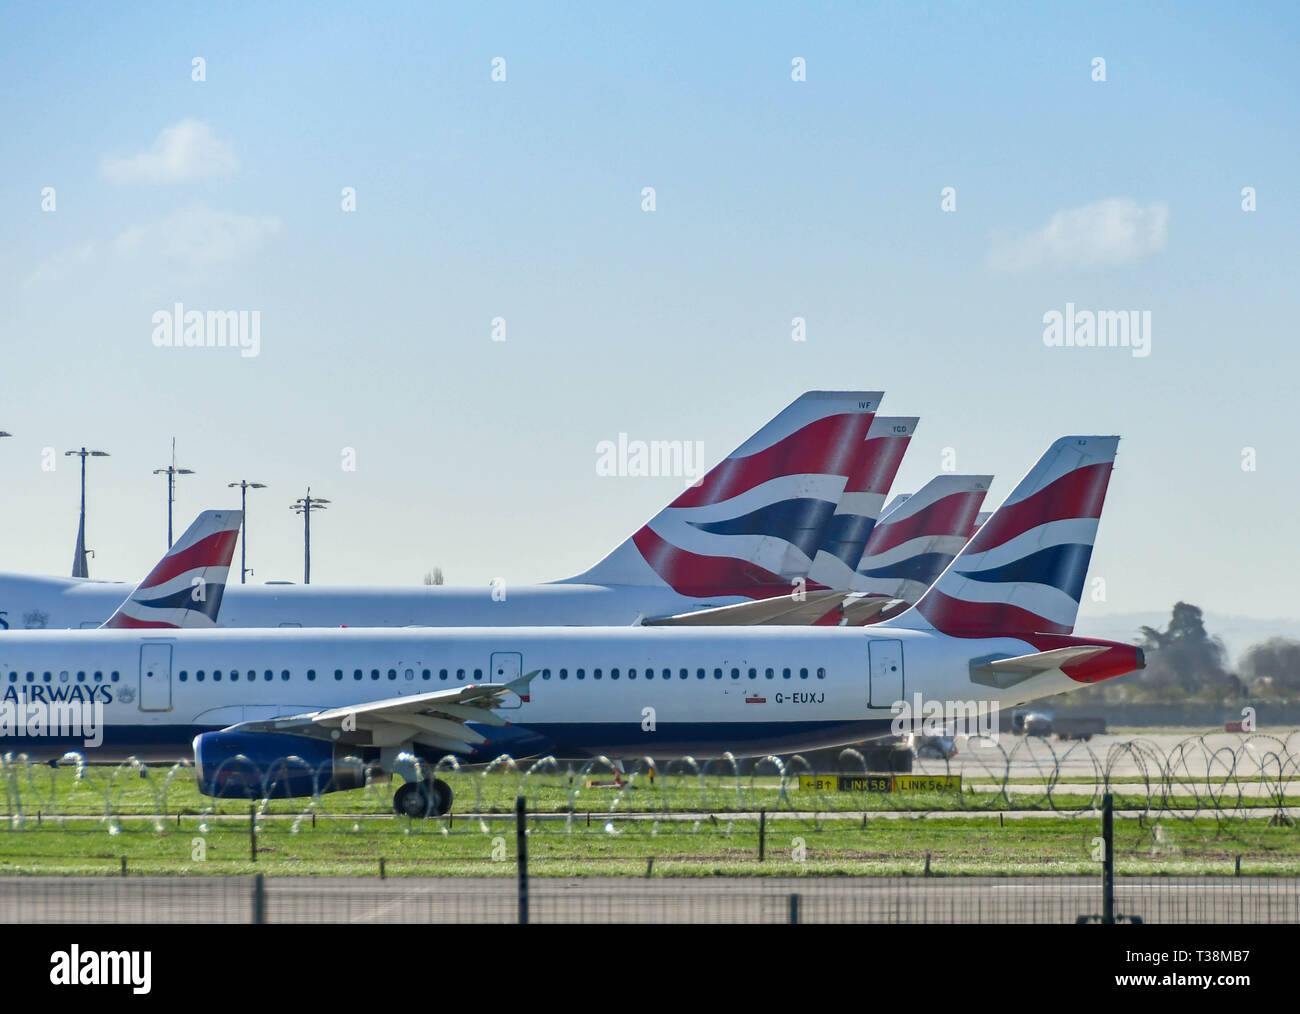 Londra, Inghilterra - Marzo 2019: British Airways Airbus A321 aereo di linea di rullaggio passato le alette di coda della compagnia aerea jumbo jet Boeing 747 a Londra Heathrow un Foto Stock